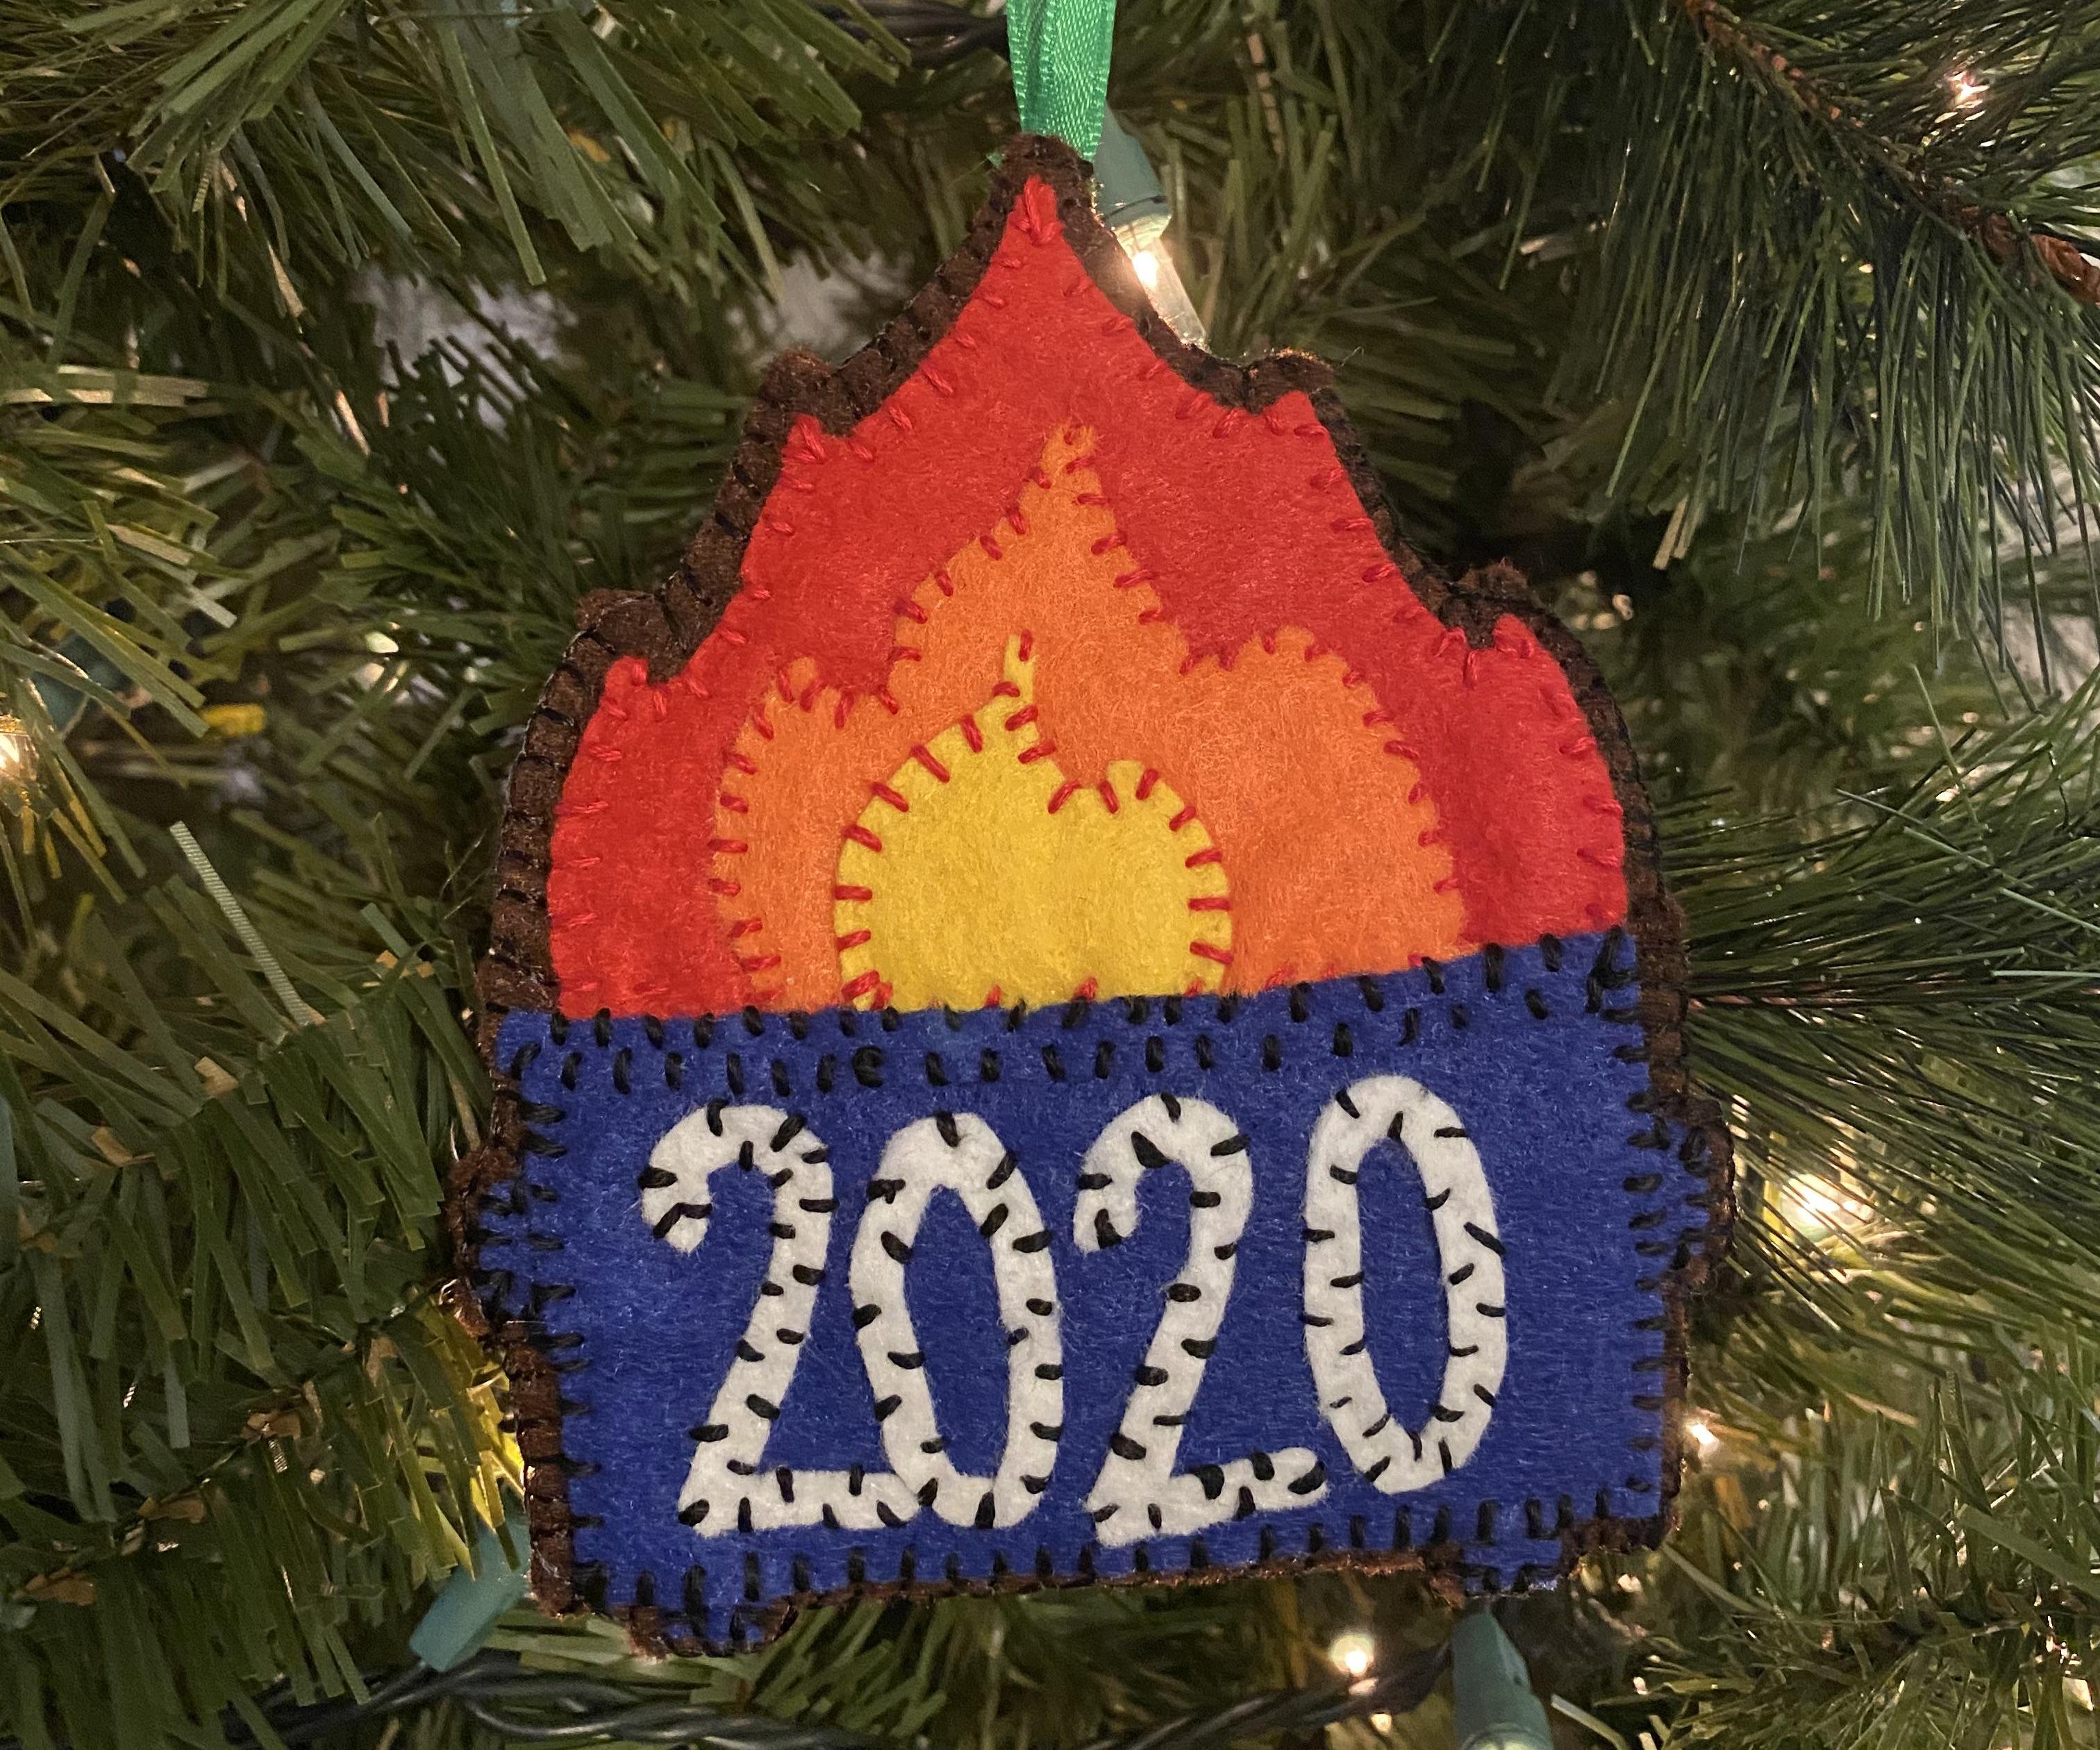 2020 Dumpster Fire Ornament